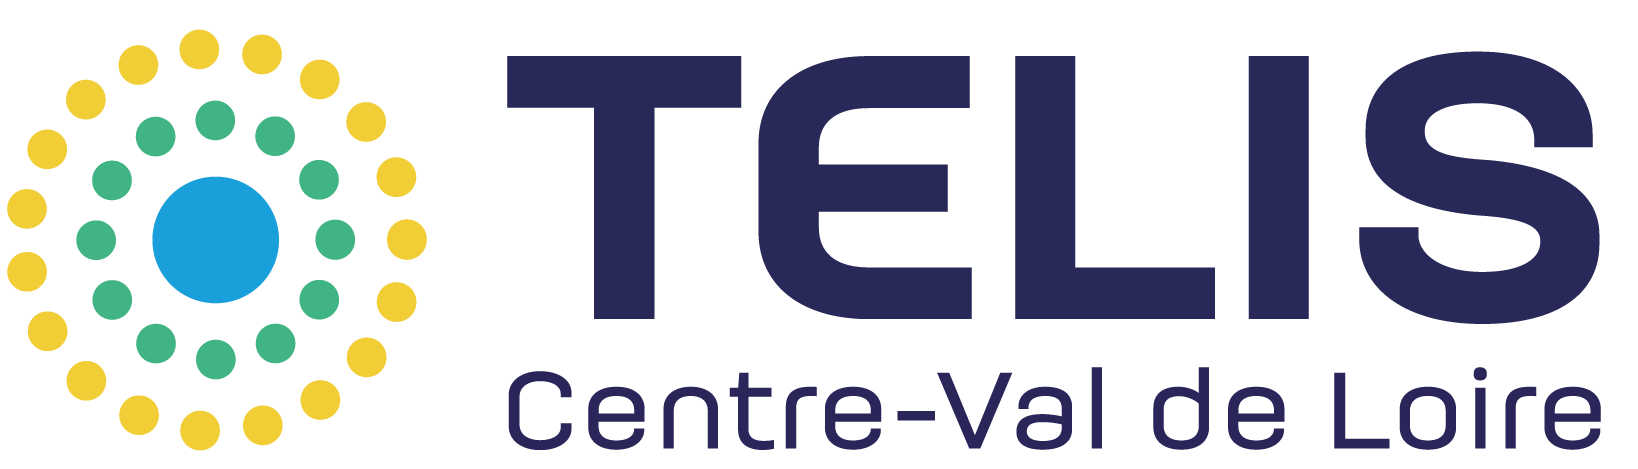 Logo TELIS - GIP e-Santé Centre-Val de Loire